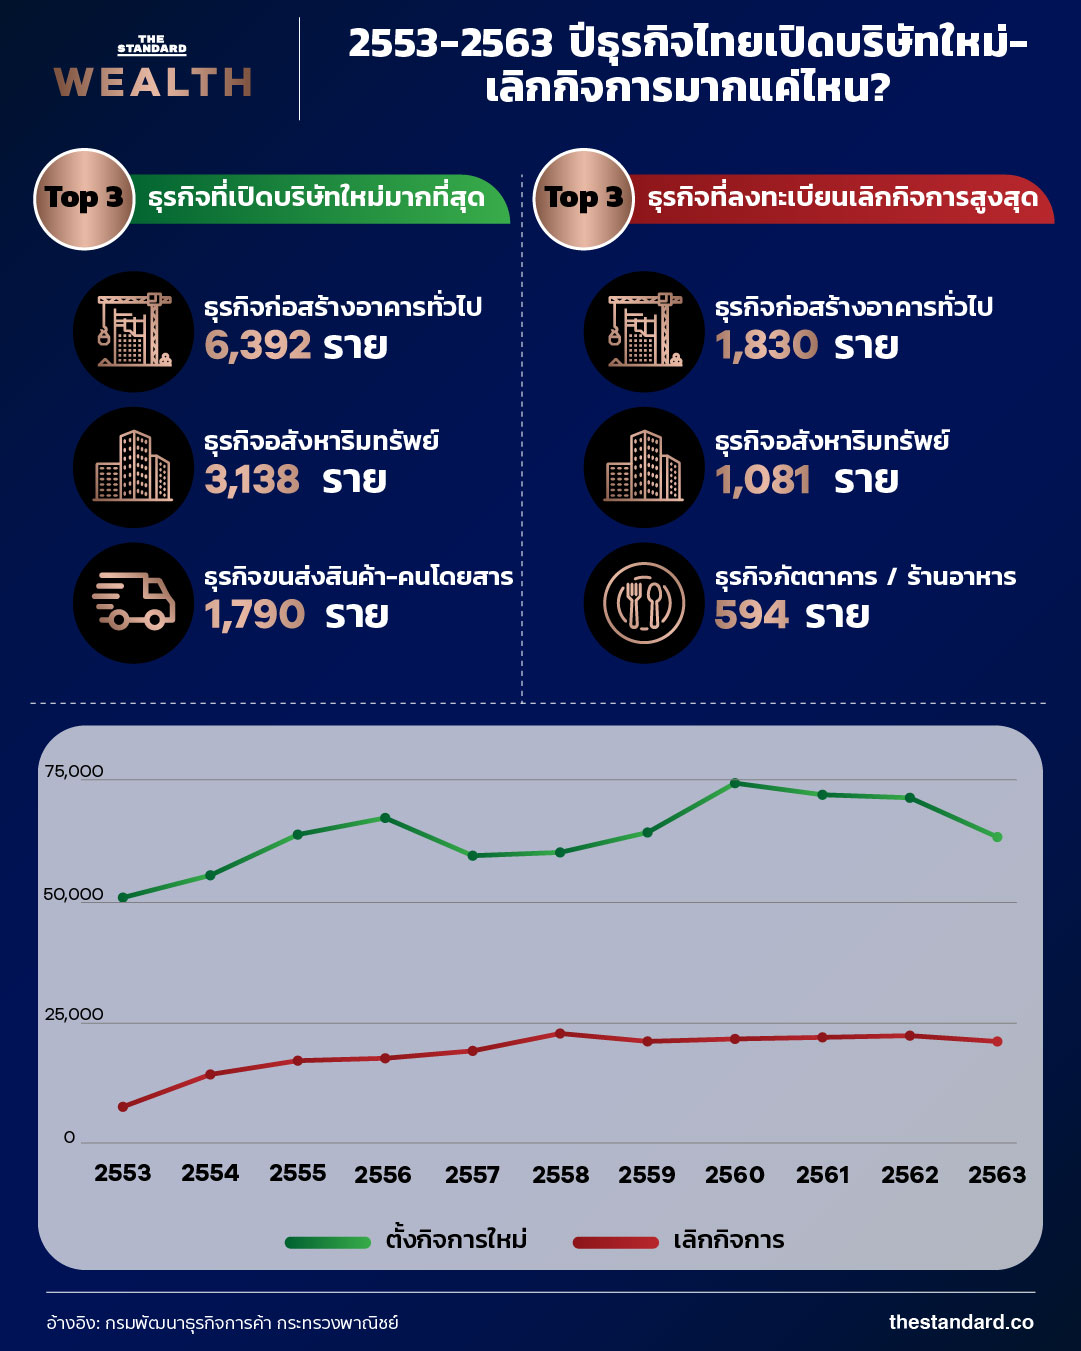 2553-2563 ปีธุรกิจไทยเปิดบริษัทใหม่-เลิกกิจการมากแค่ไหน infographic